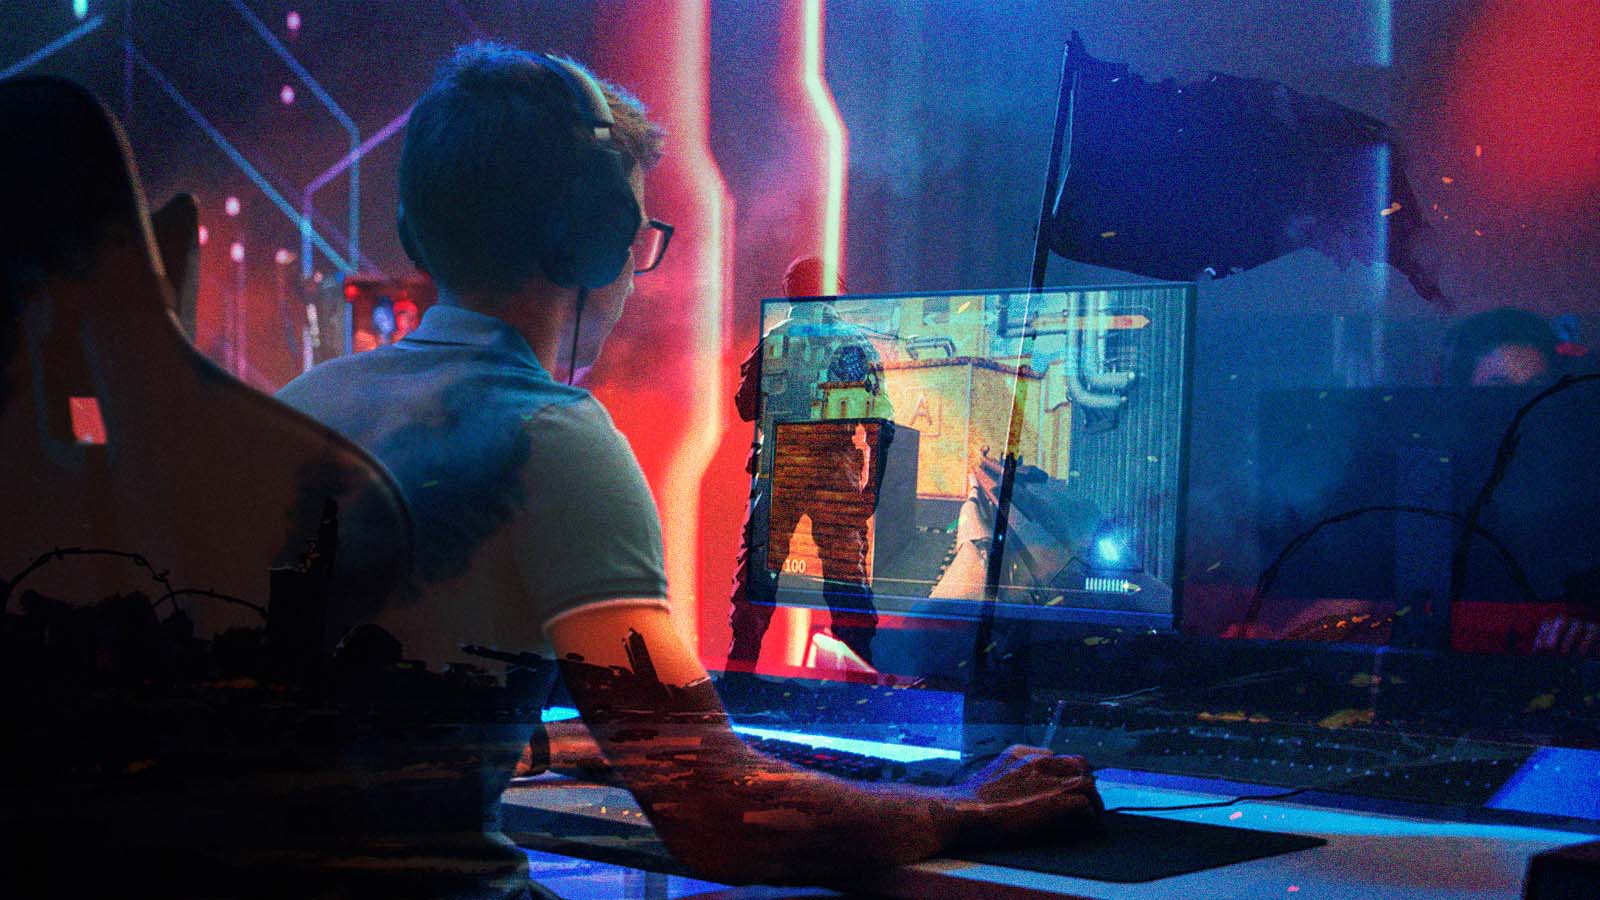 Counter-Strike 2 é real e será lançado em breve, diz jornalista 